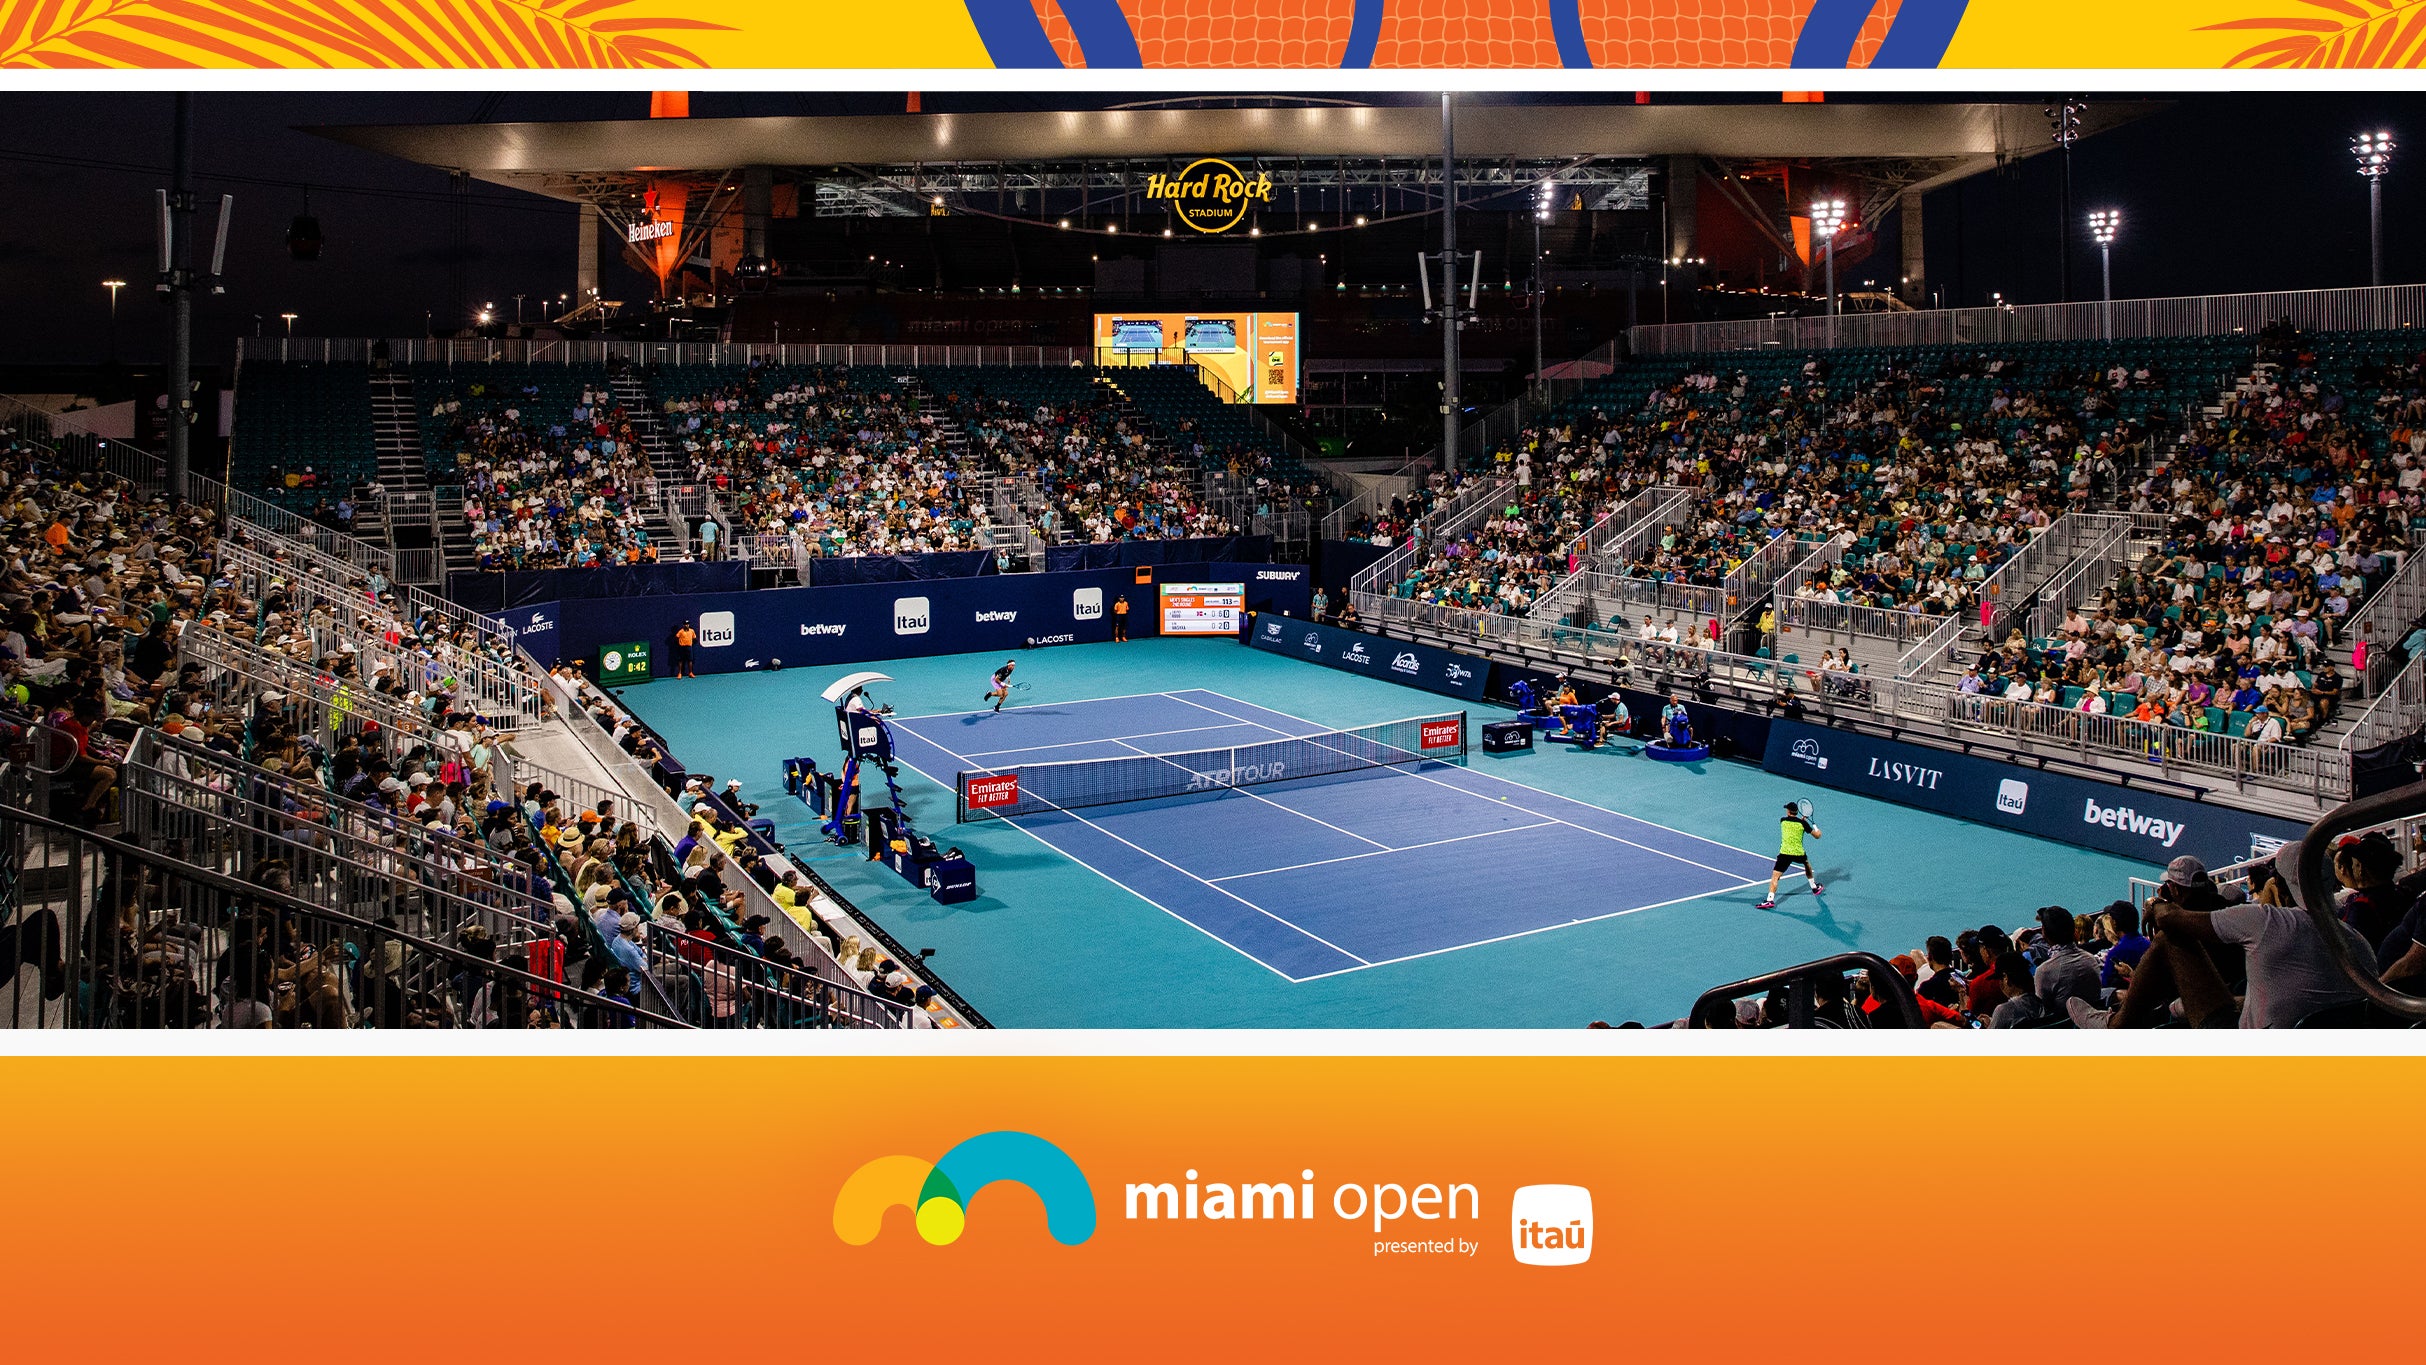 Miami Open - Grandstand Session 2 in Miami promo photo for Miami Open presale offer code